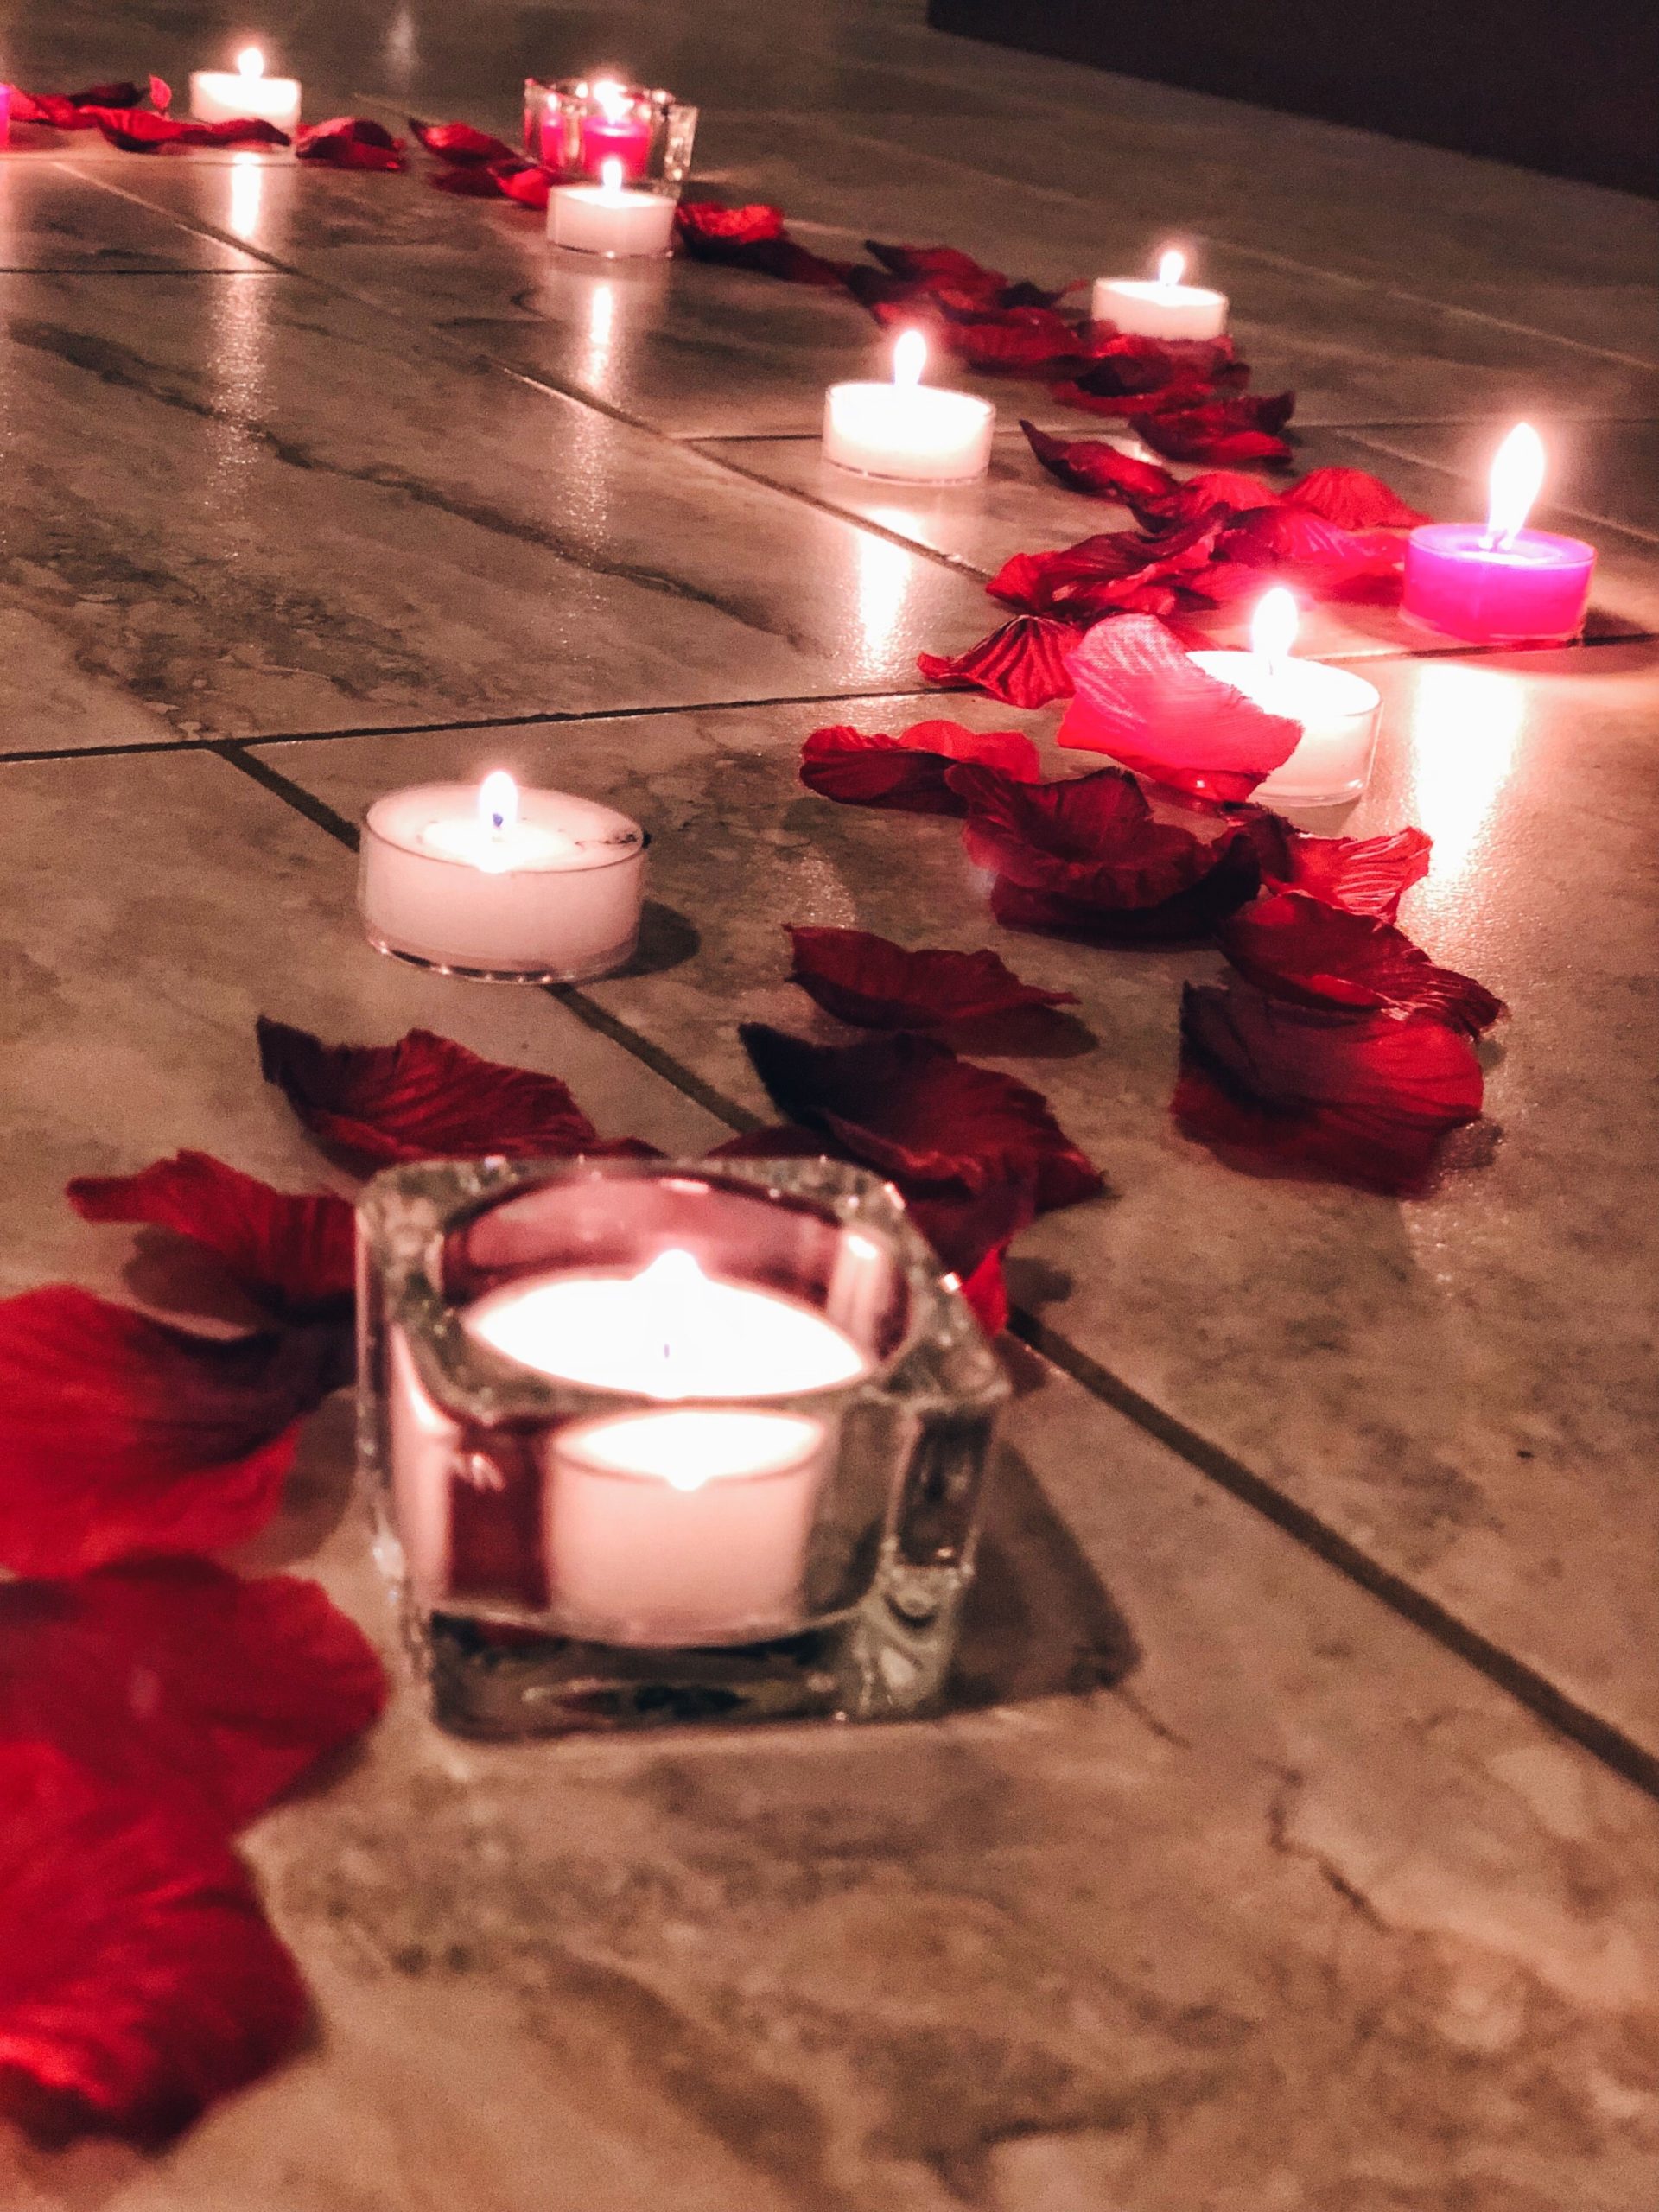 Décoration romantique avec des bougies pour la Saint-Valentin.